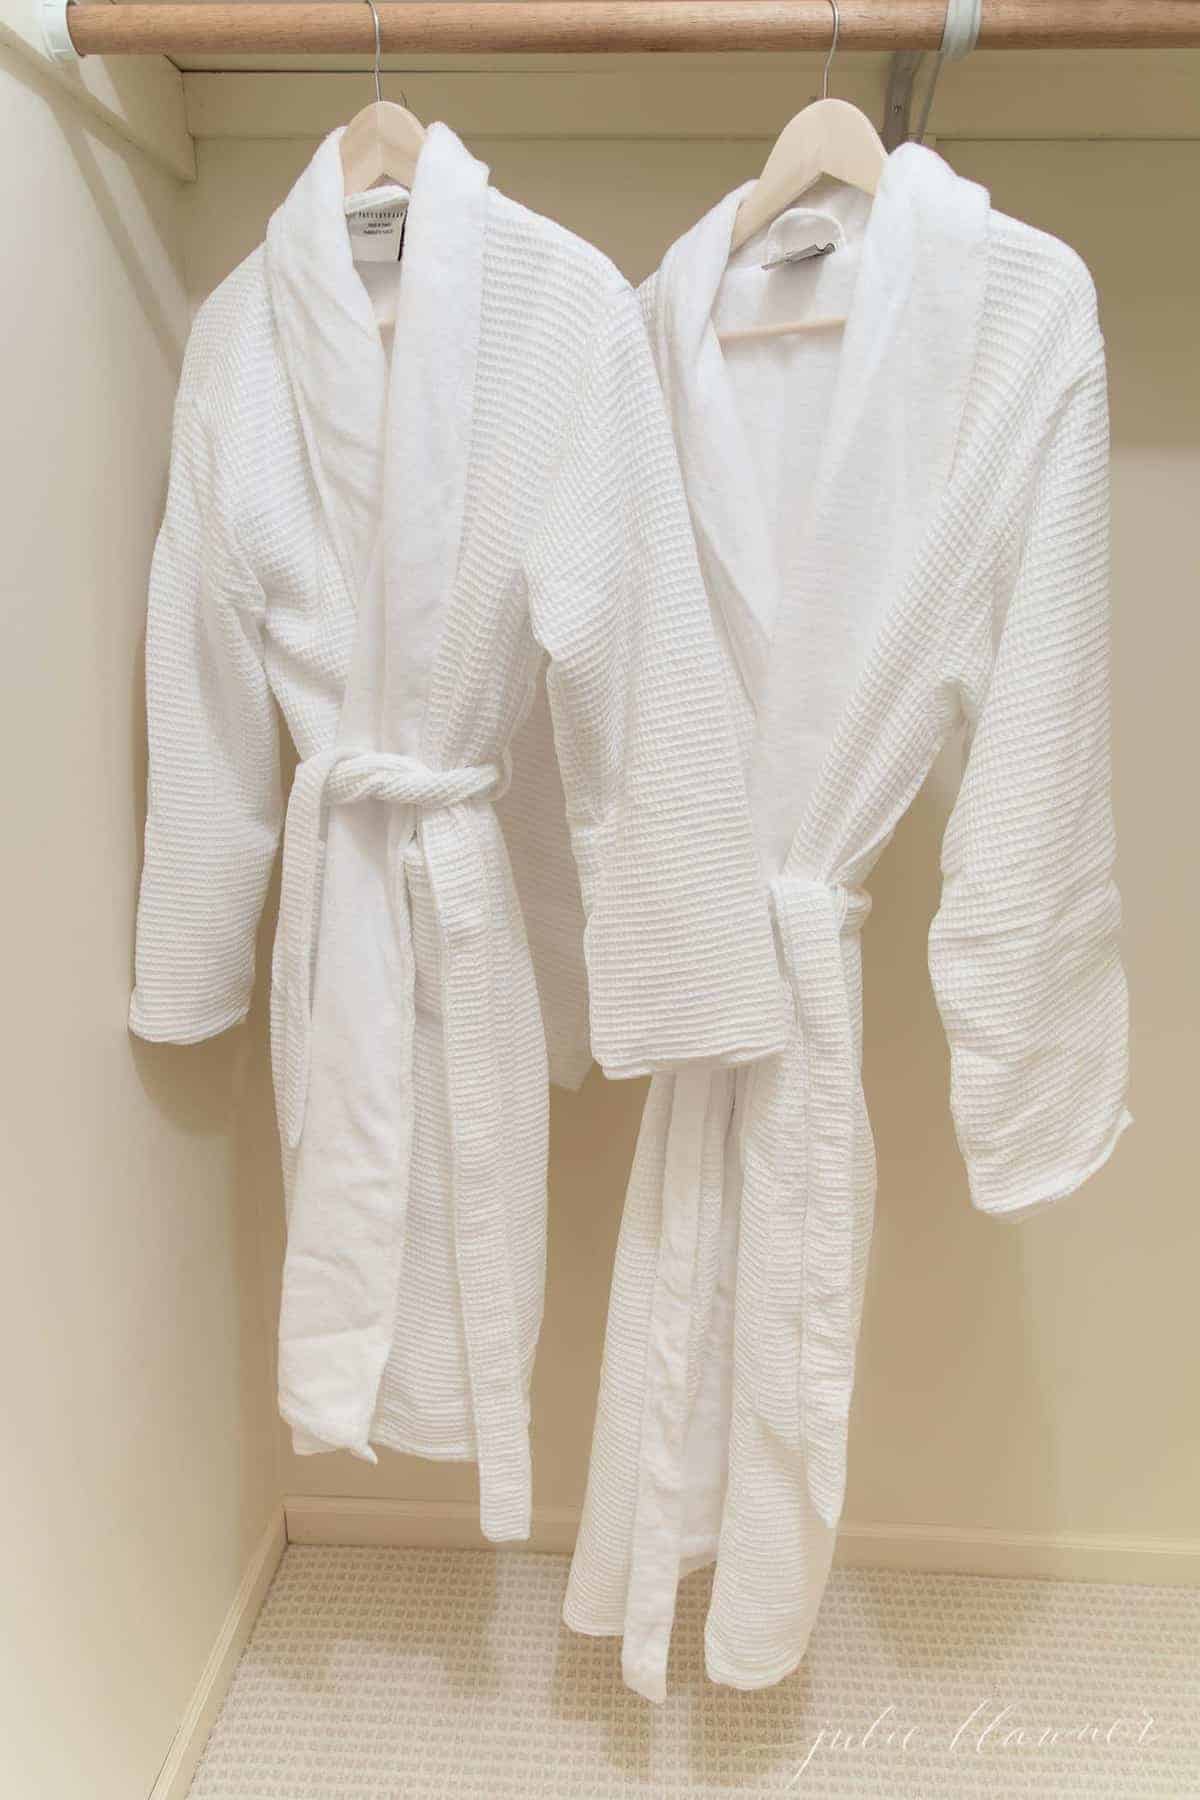 两件白色浴袍悬挂在客房壁橱里。